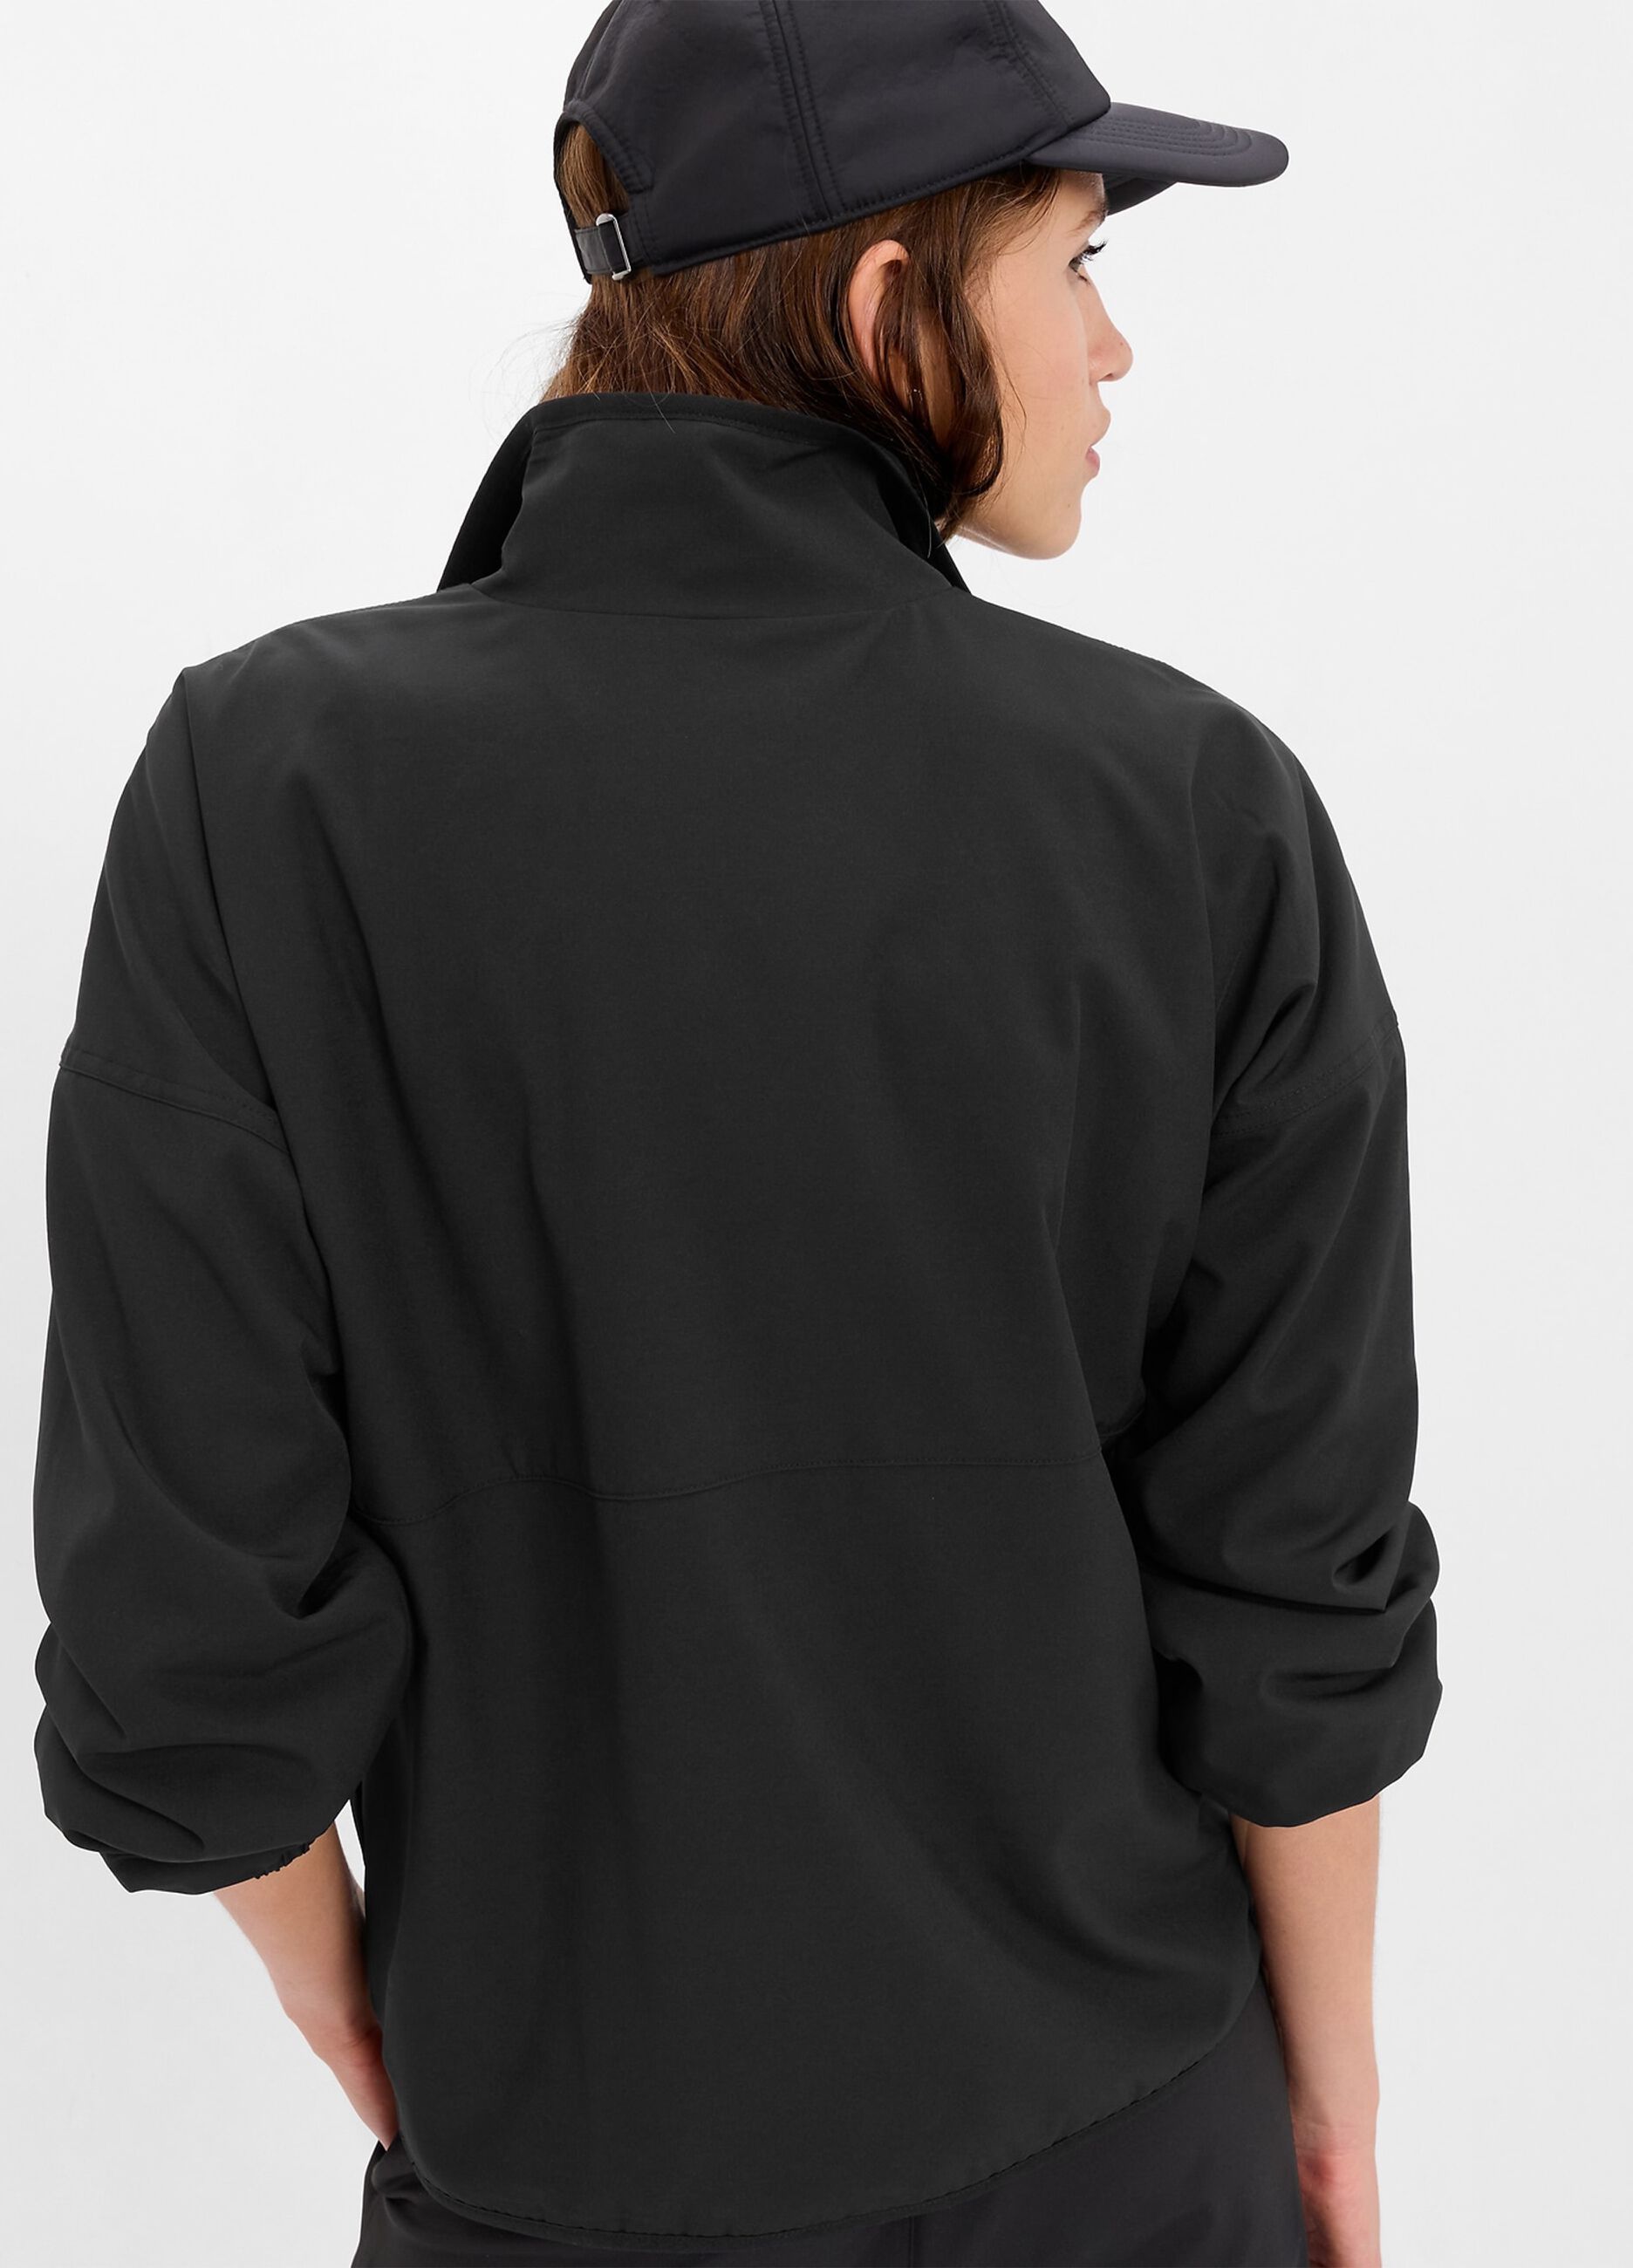 Half-zip sweatshirt with fleece lining._1